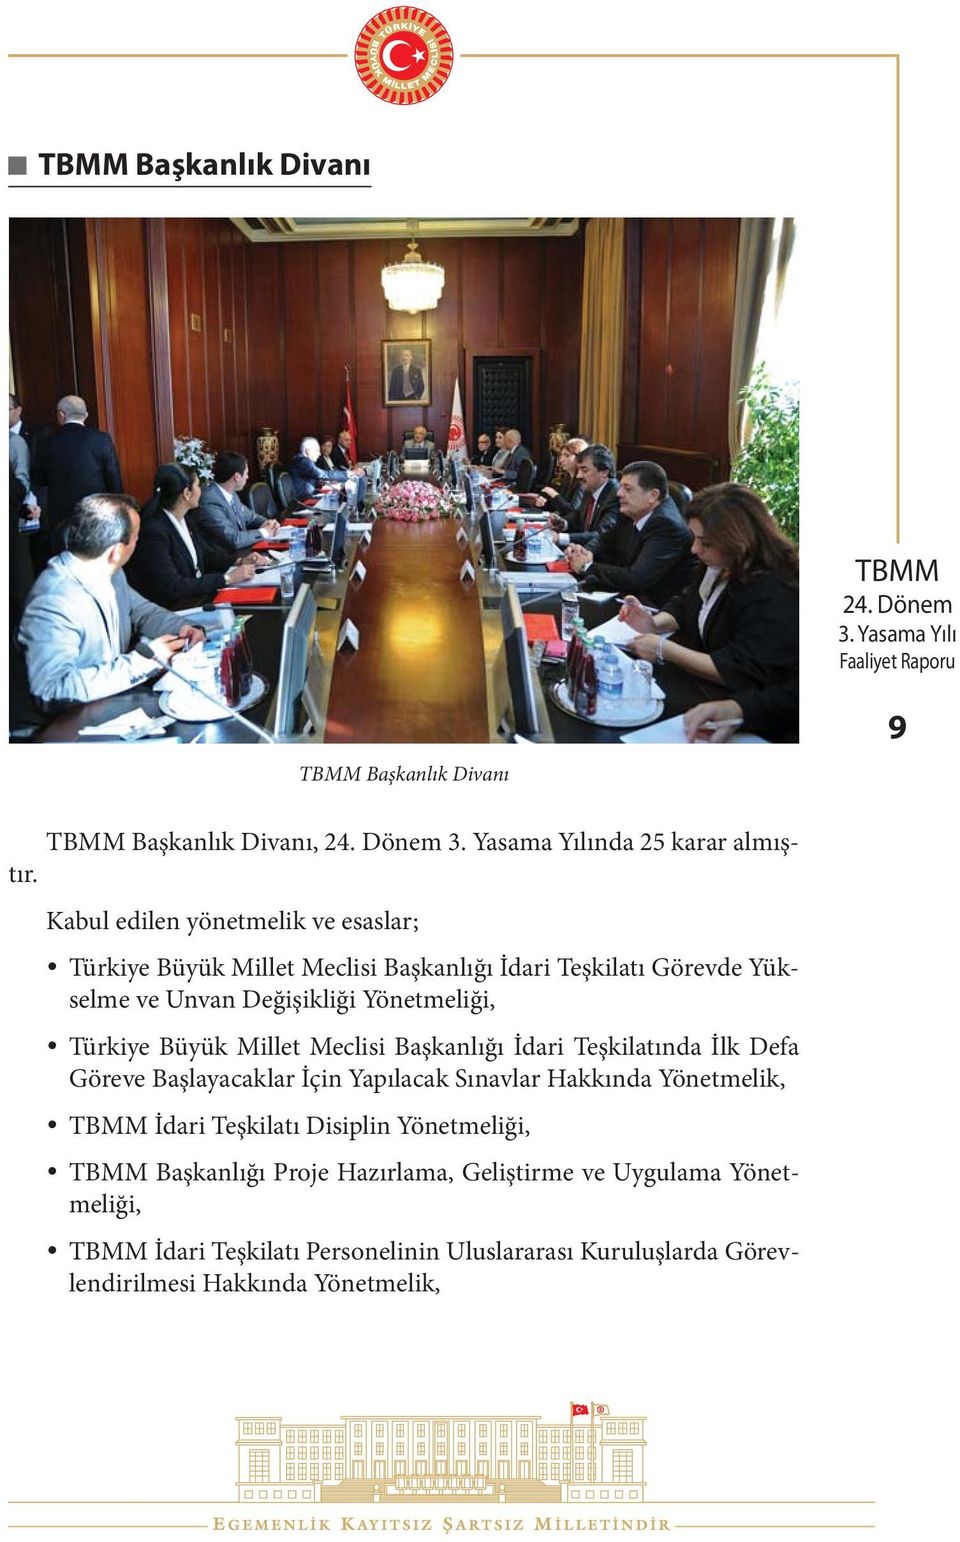 Yönetmeliği, Türkiye Büyük Millet Meclisi Başkanlığı İdari Teşkilatında İlk Defa Göreve Başlayacaklar İçin Yapılacak Sınavlar Hakkında